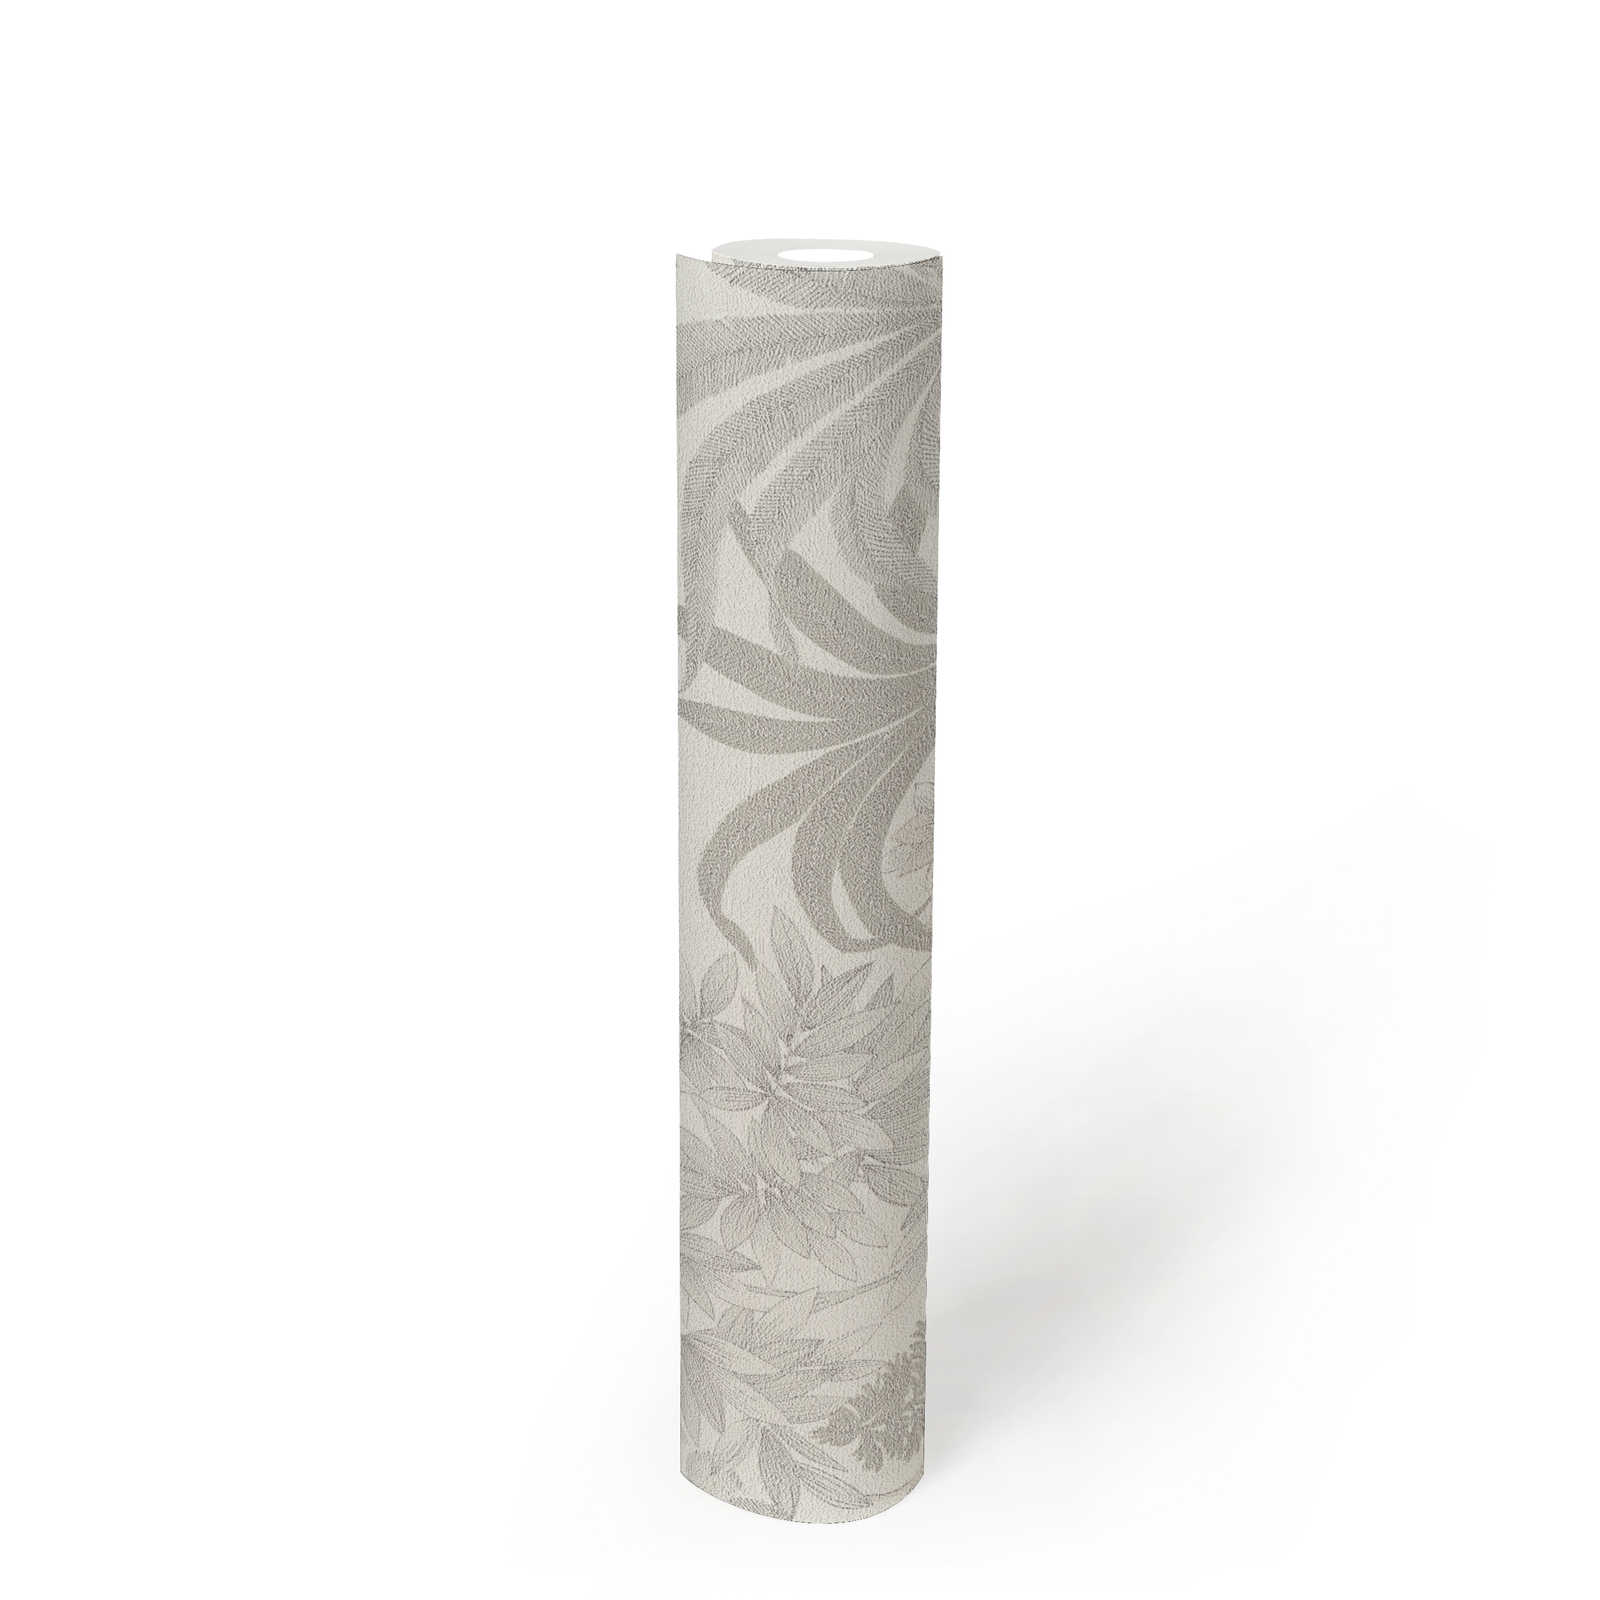             Papier peint fleuri légèrement brillant de couleur discrète - blanc, gris, argenté
        